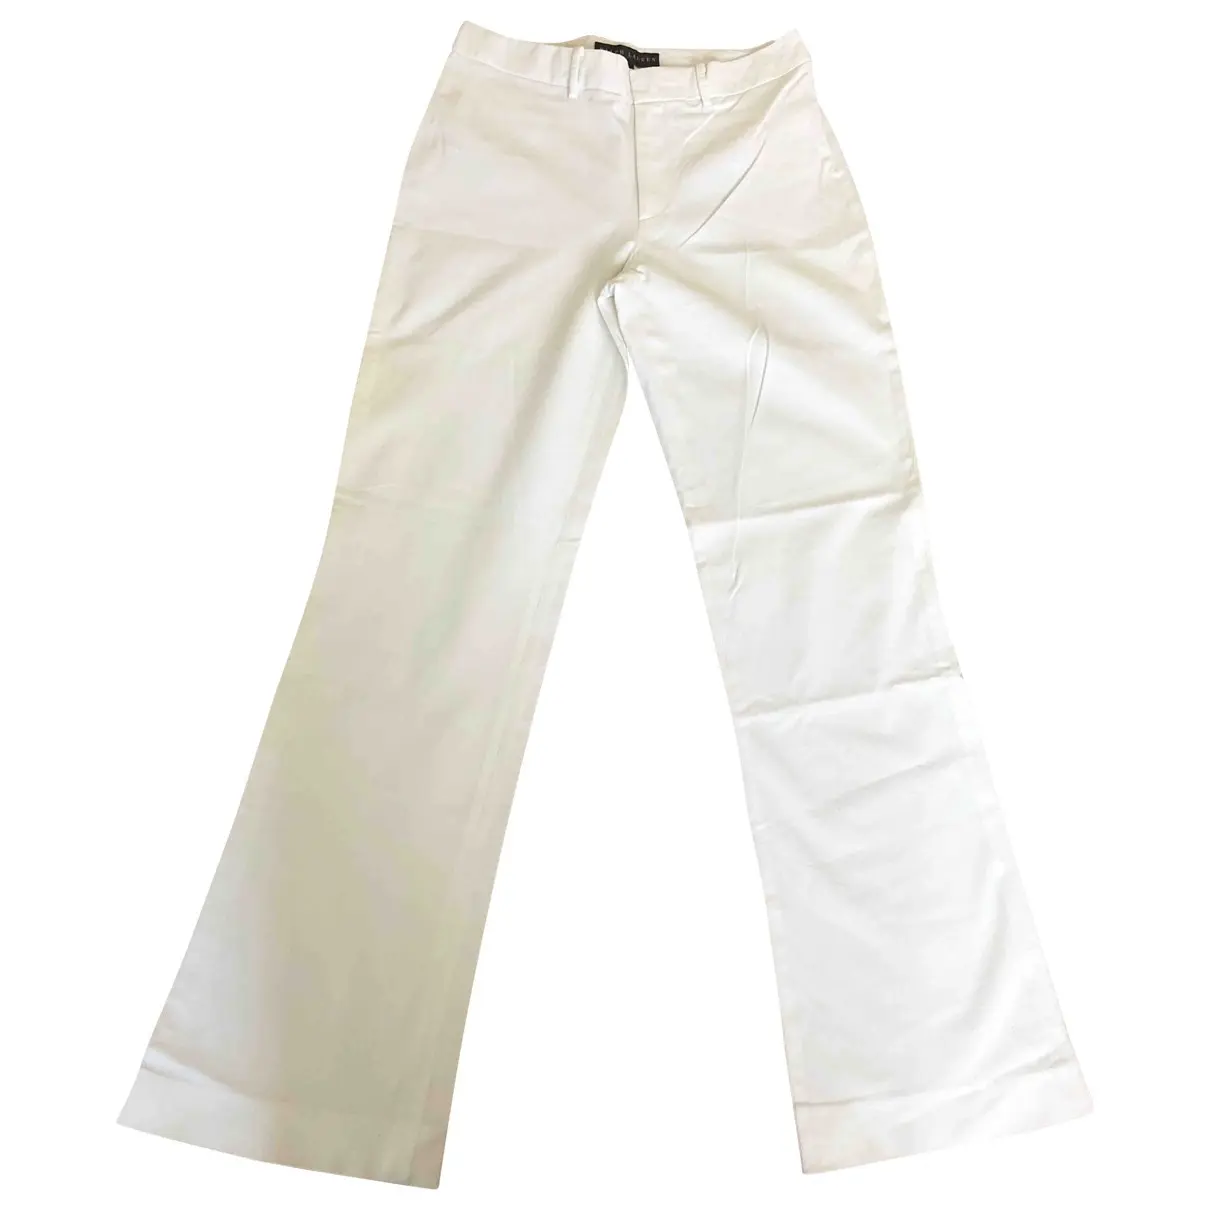 Large pants Ralph Lauren